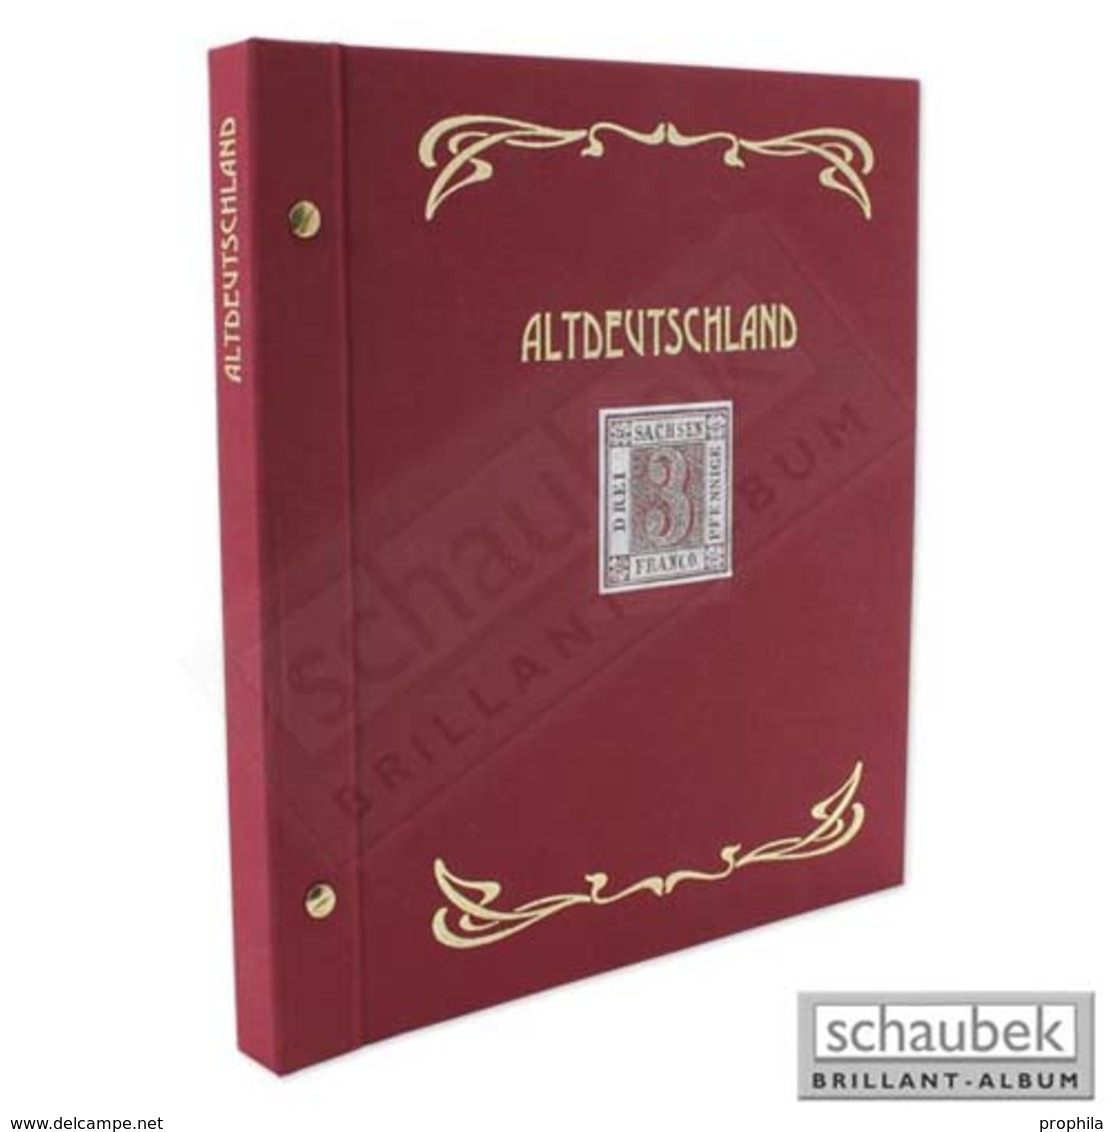 Schaubek Ds0021 Schraubbinder Leinen Schmal Rot, Reprint-Ausführung Altdeutschland - Groß, Grund Schwarz